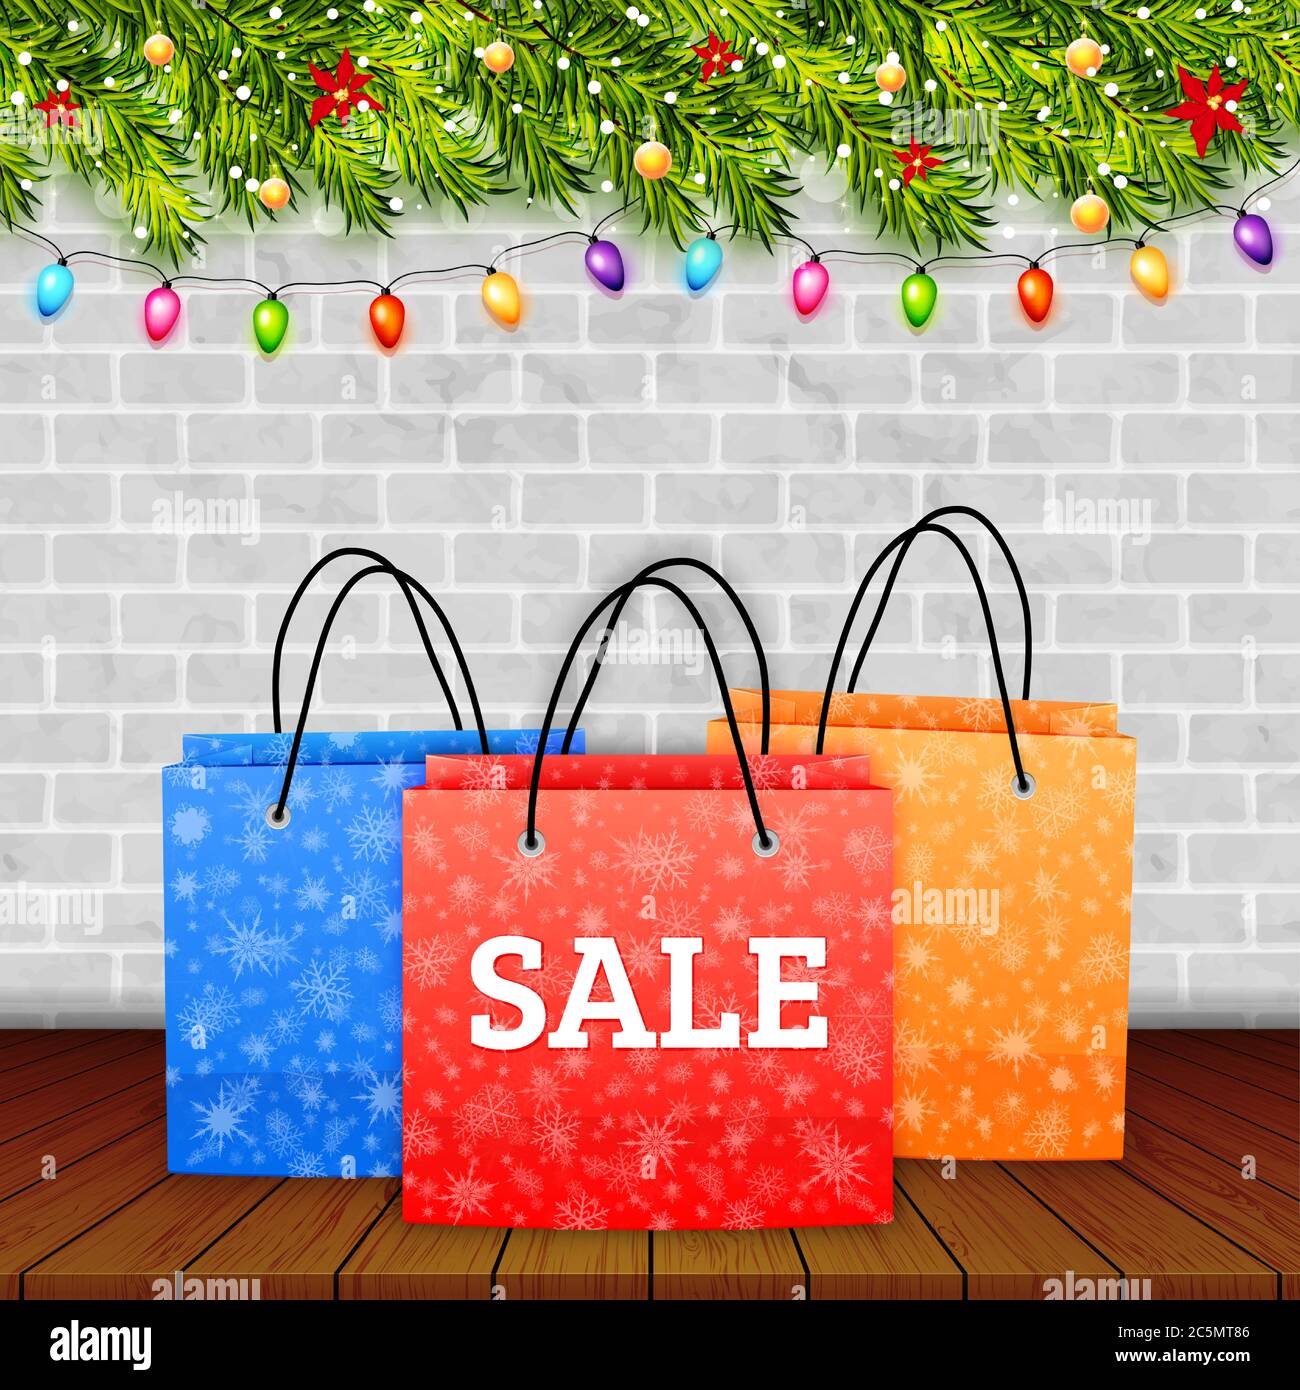 Weihnachten Verkauf. Shoping Papiertüte auf Holz Tischplatte mit Winter Hintergrund Vektor Stock Vektor